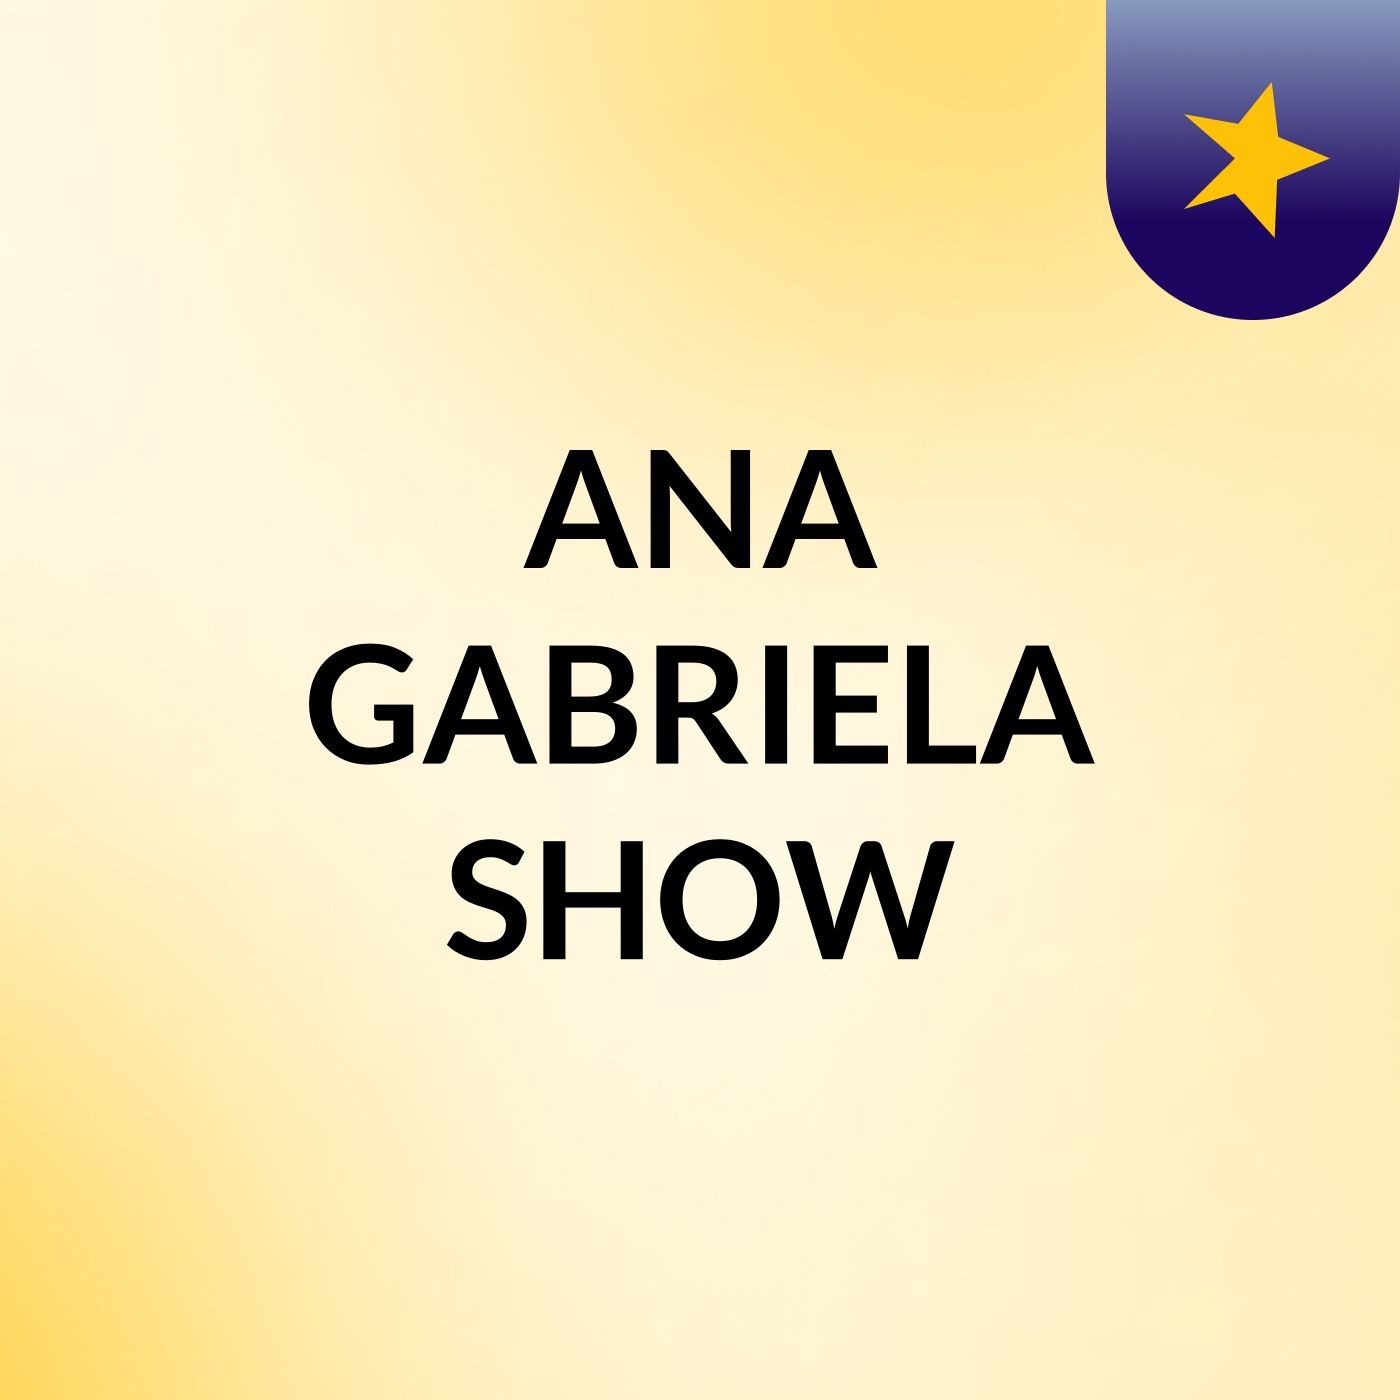 ANA GABRIELA SHOW